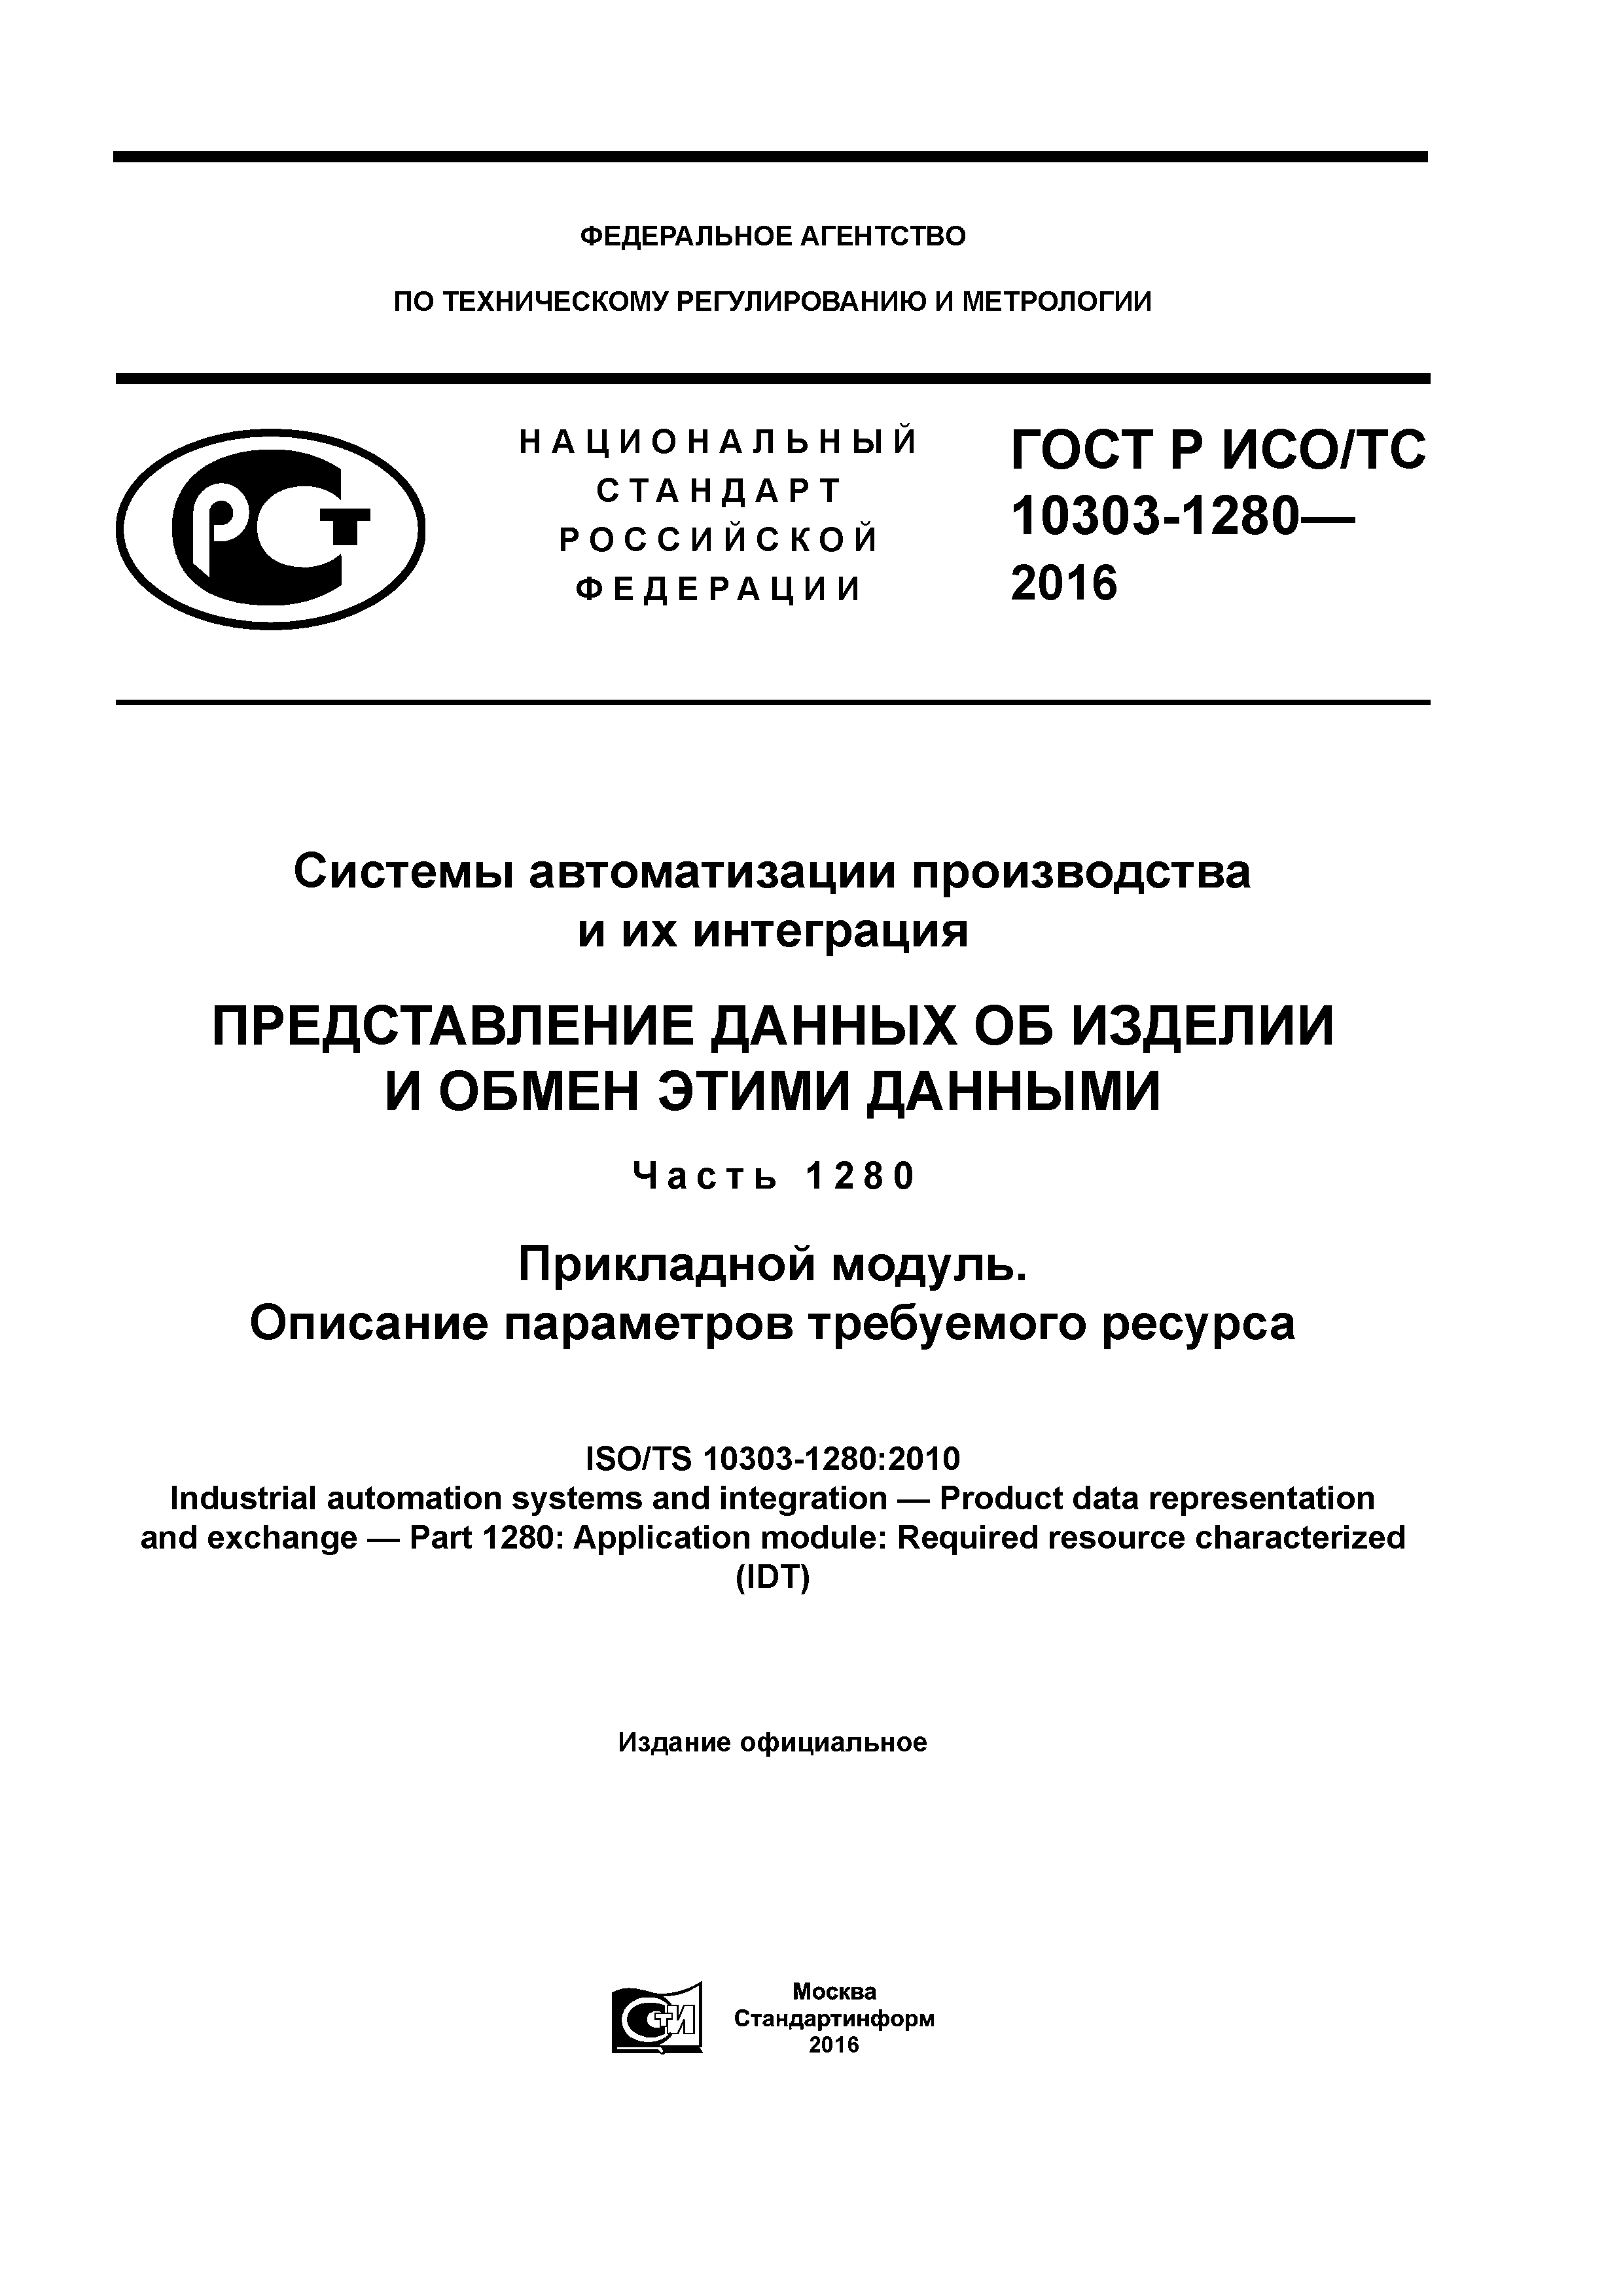 ГОСТ Р ИСО/ТС 10303-1280-2016